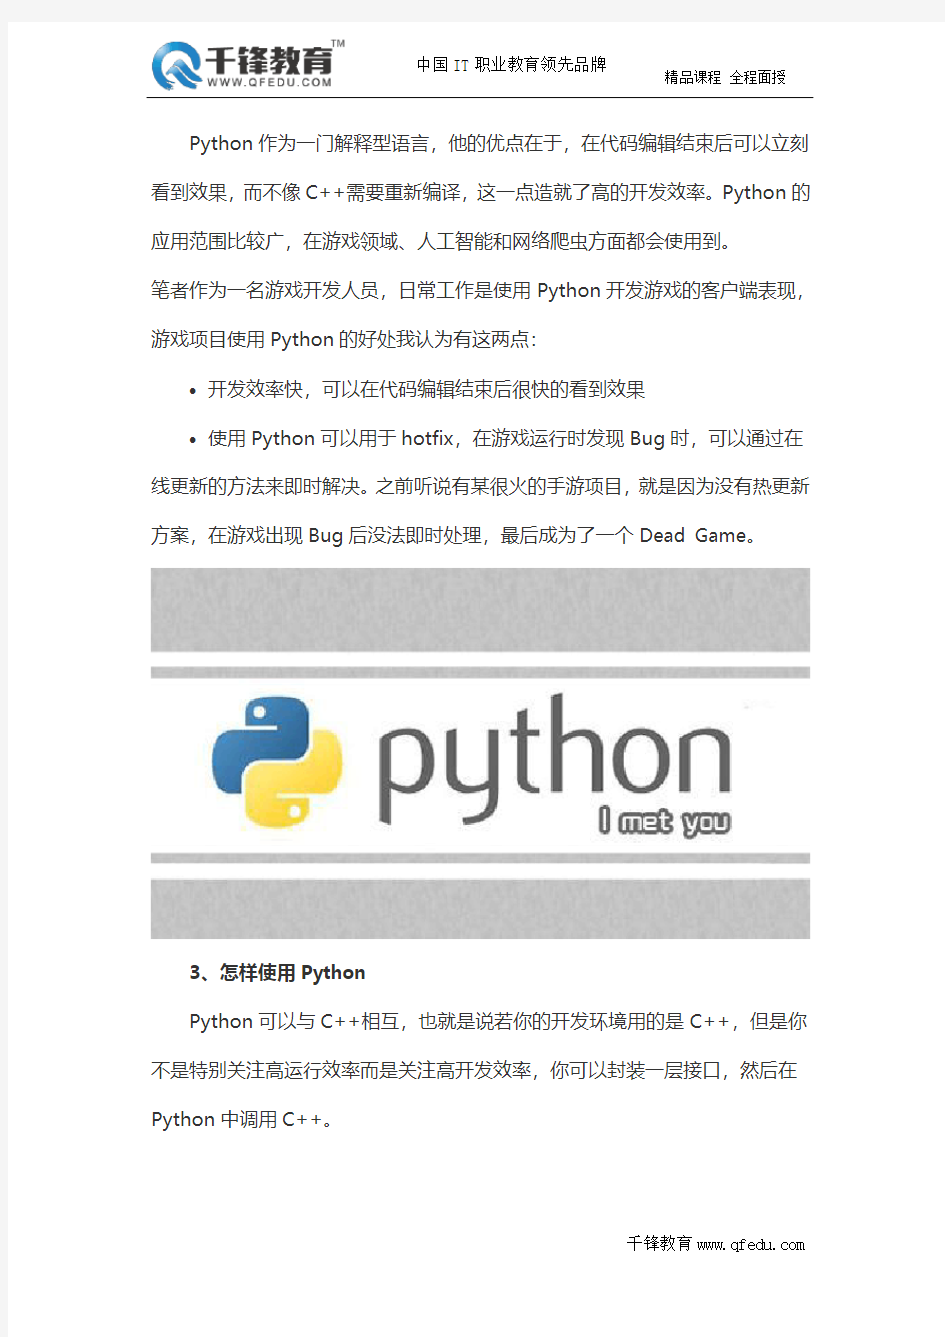 Python学习中最常见的三个问题